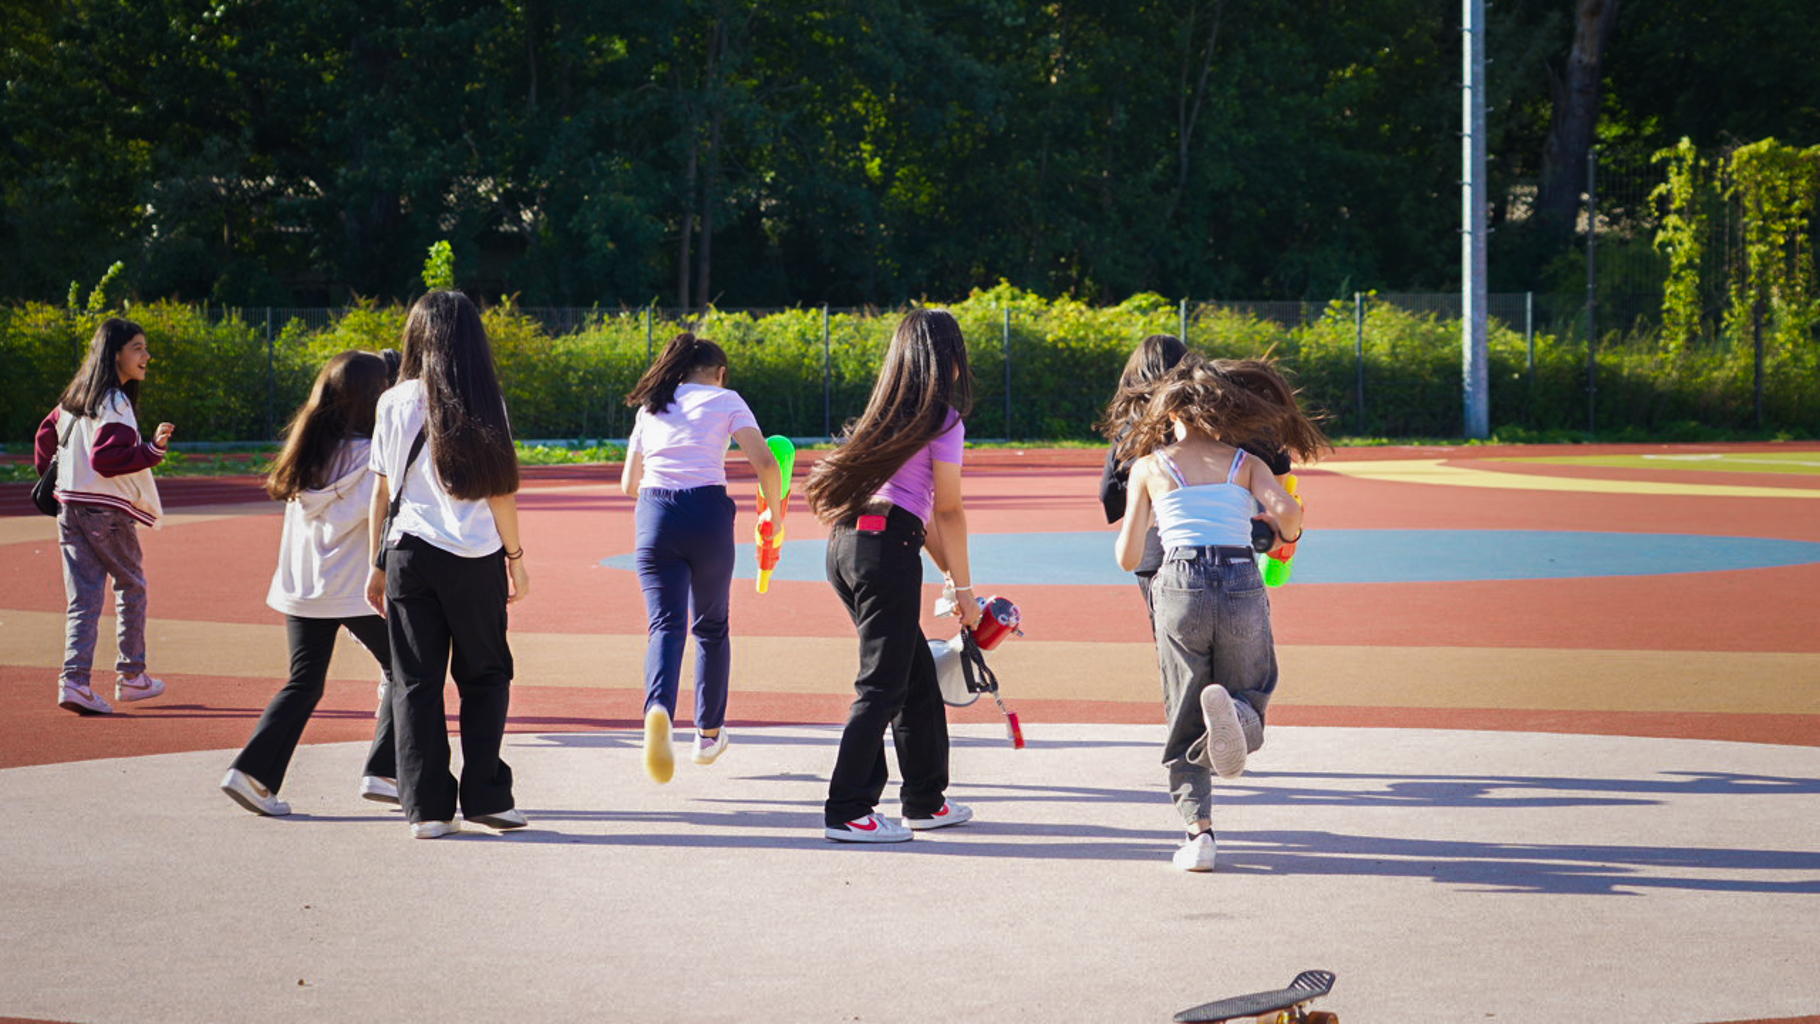 Sechs Jugendliche laufen über einen Sportplatz mit Wasserspritzpistolen in der Hand